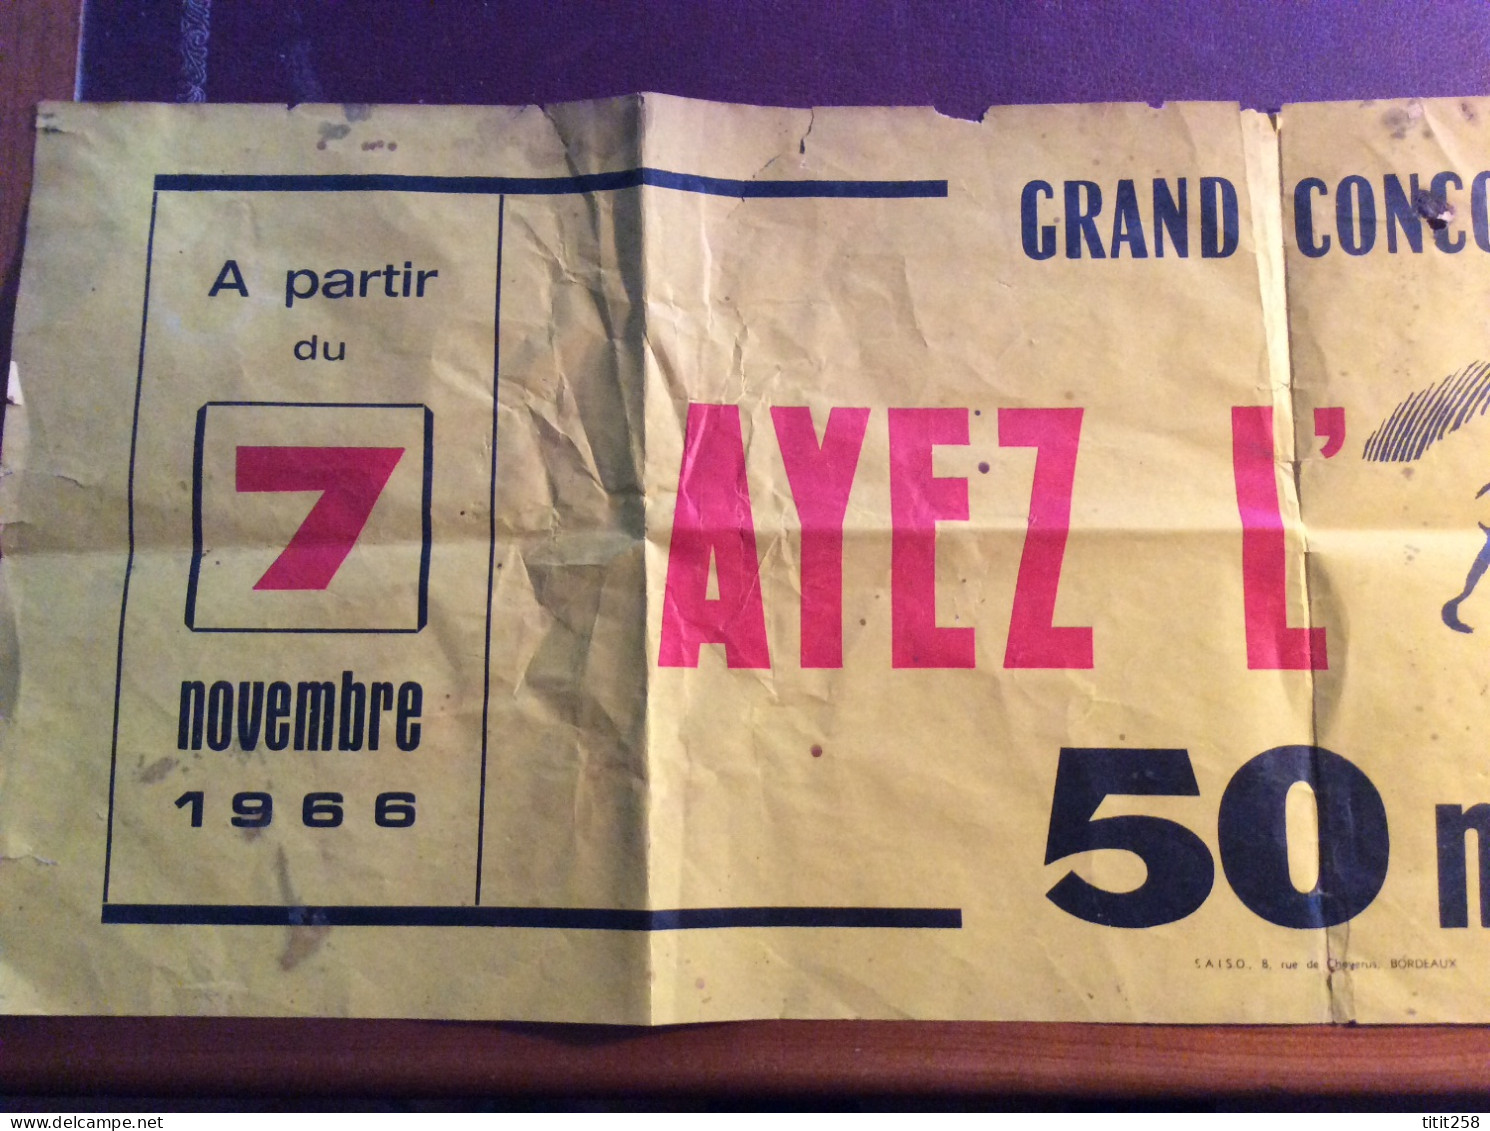 Ancien Bandeau Grand Concours SUD OUEST Ayez L'Oeil 1966  . Bordeaux 33 Gironde - Afiches